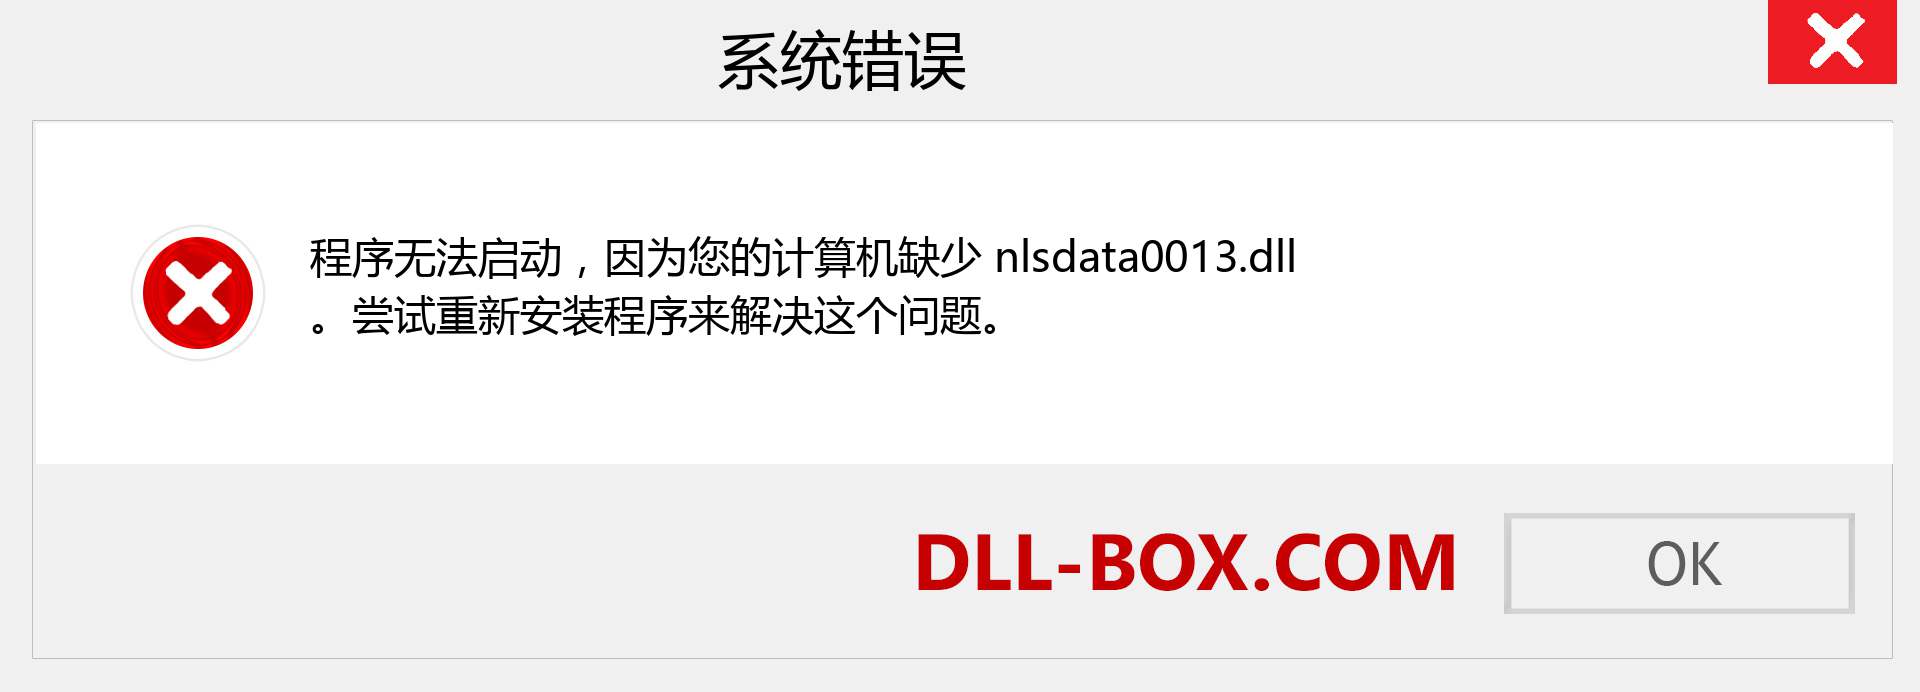 nlsdata0013.dll 文件丢失？。 适用于 Windows 7、8、10 的下载 - 修复 Windows、照片、图像上的 nlsdata0013 dll 丢失错误